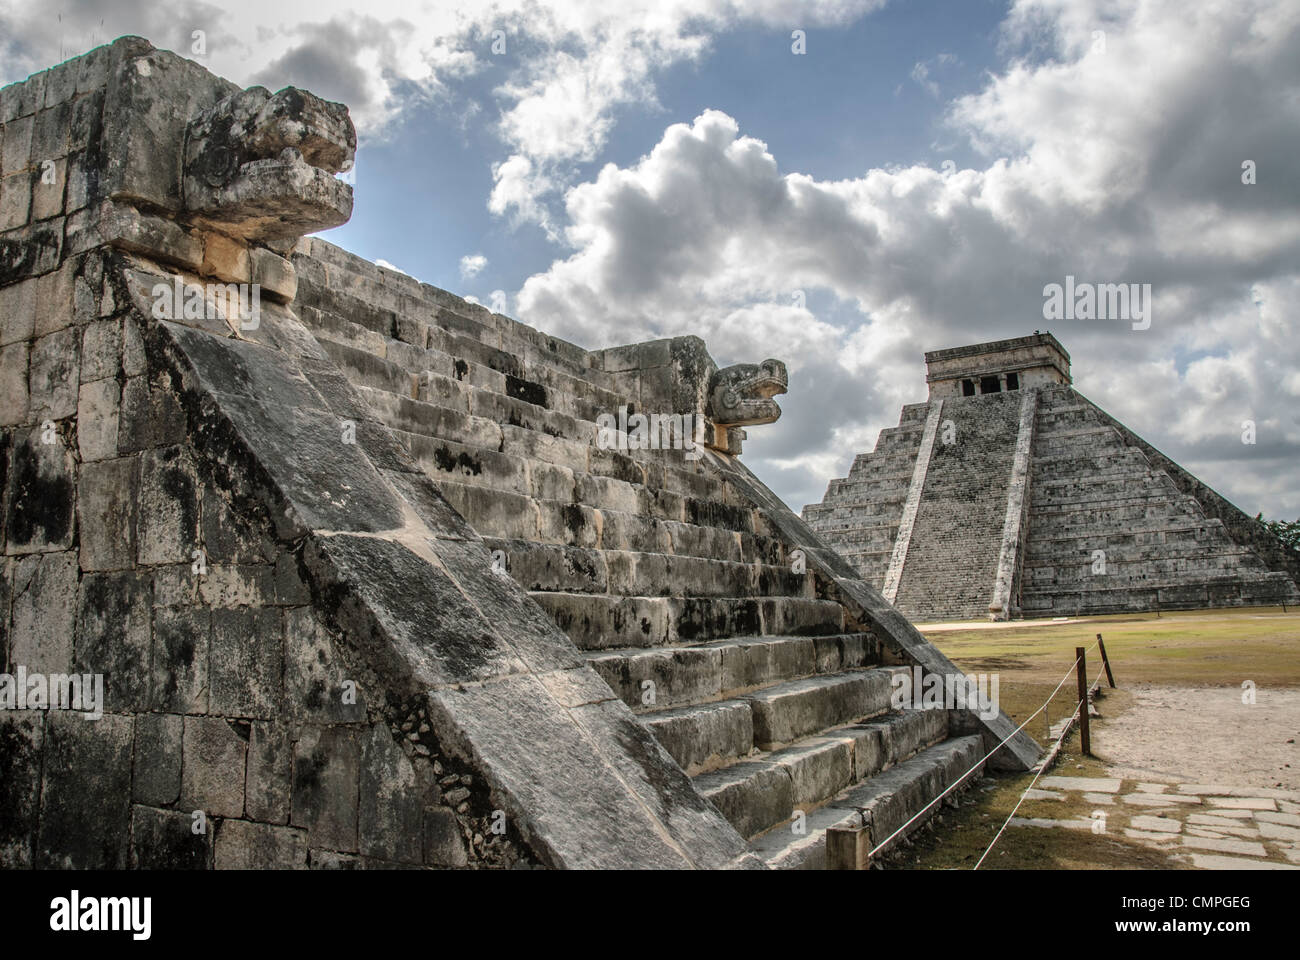 CHICHEN ITZA, Mexiko - Im Hintergrund rechts ist der Tempel des Kukulkan (El Castillo) und im Vordergrund links sind die geschnitzten Jaguar Köpfe der Venus Plattform in Chichen Itza Archäologische Zone, Ruinen eines großen Maya Zivilisation Stadt im Herzen der mexikanischen Halbinsel Yucatan. Stockfoto